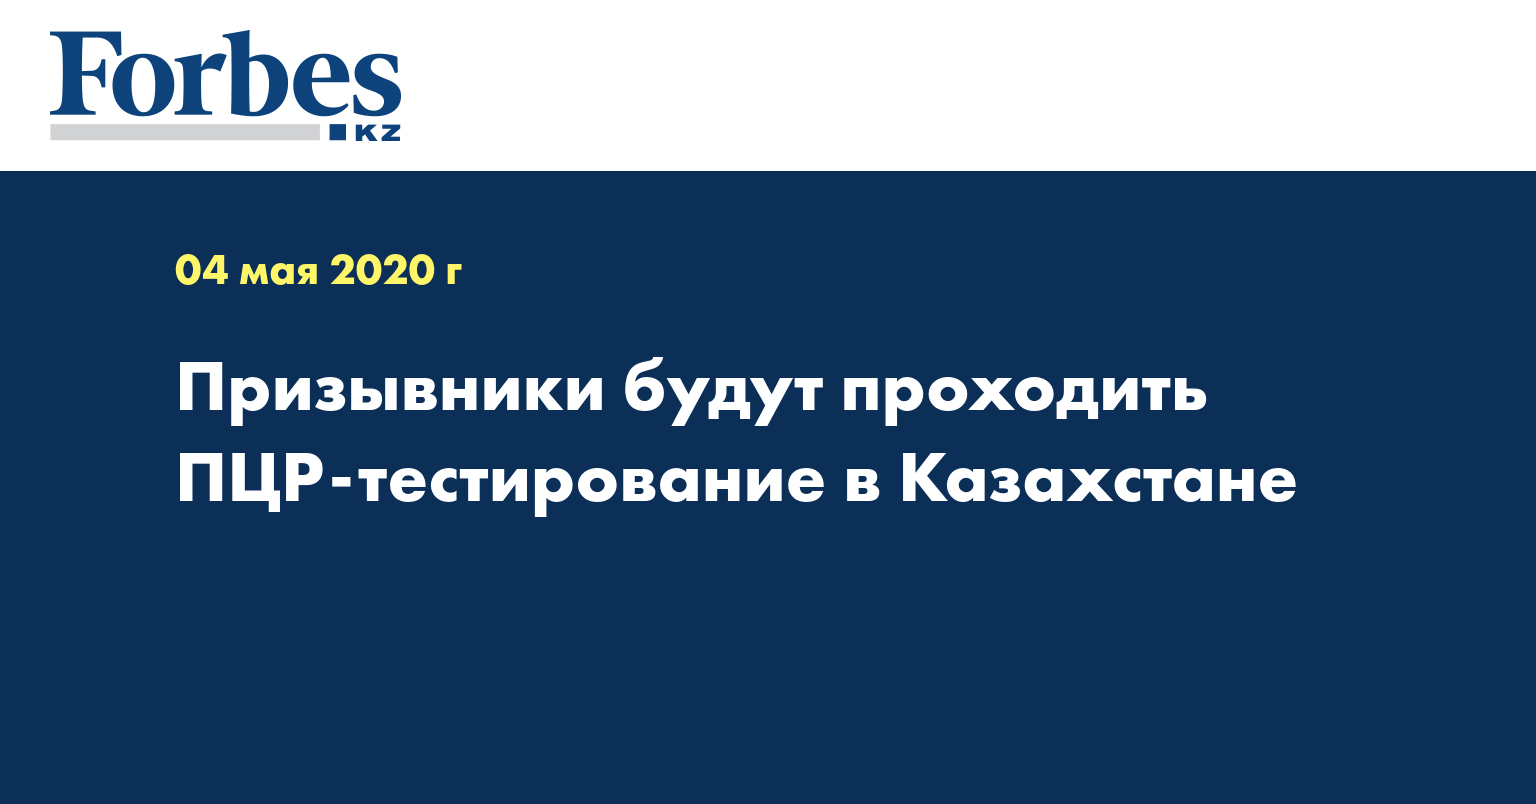  Призывники будут проходить ПЦР-тестирование в Казахстане